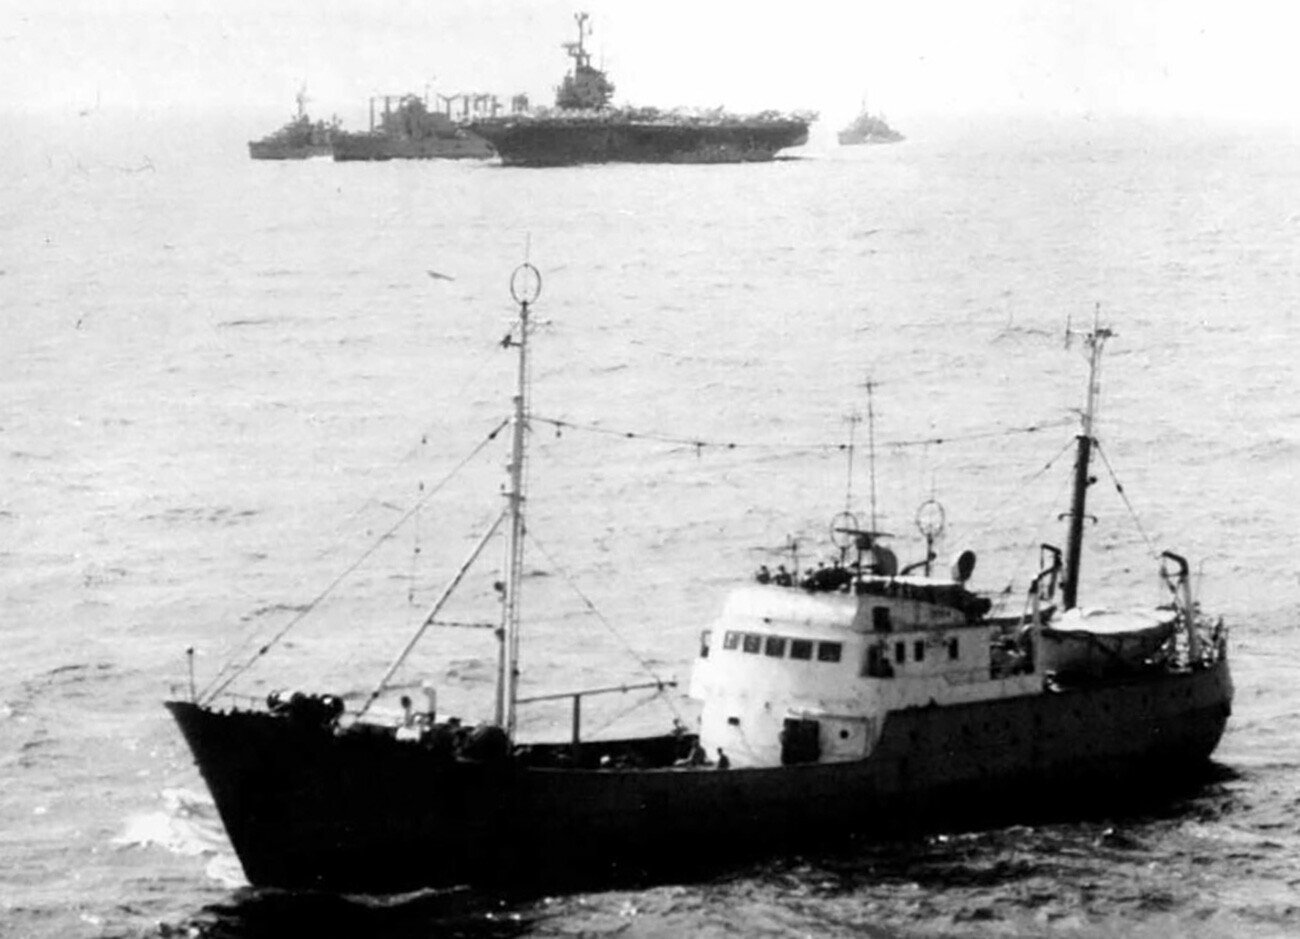 Un barco espía soviético cerca del portaaviones estadounidense.